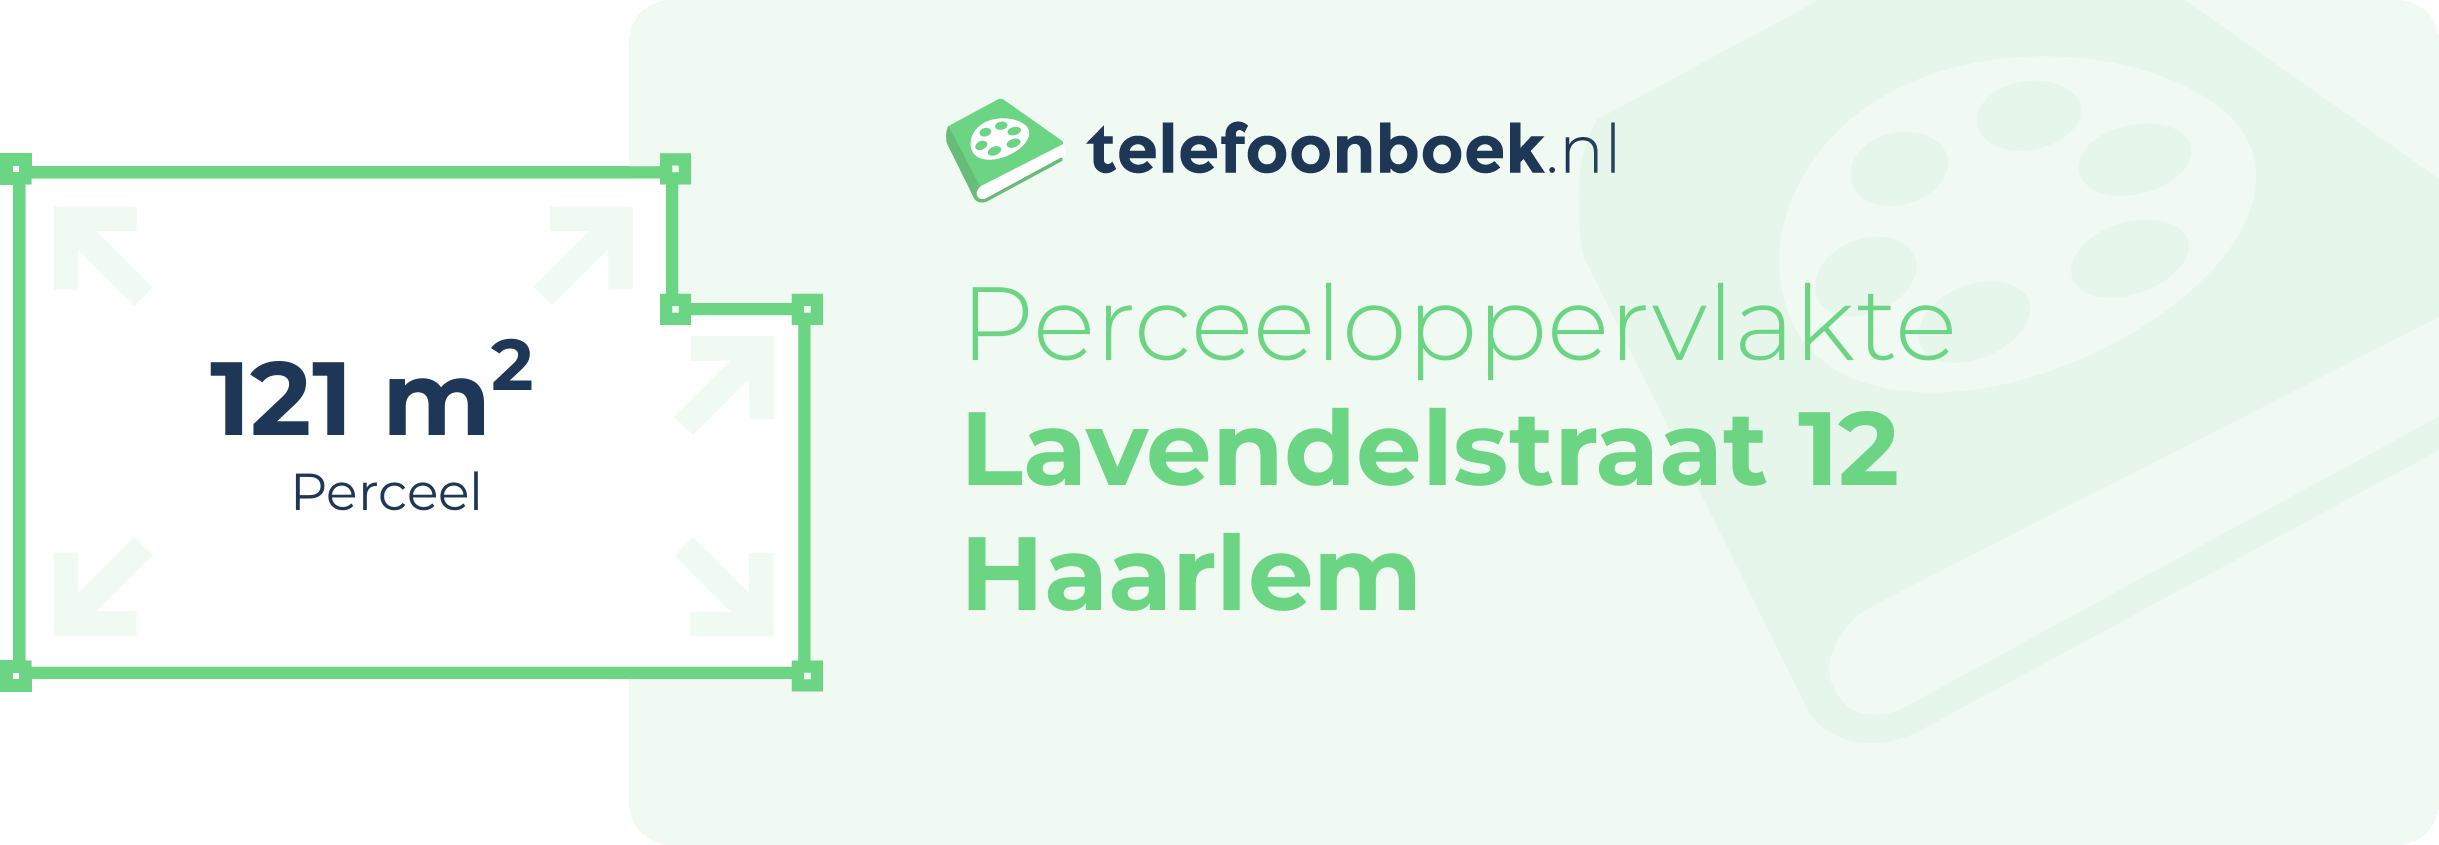 Perceeloppervlakte Lavendelstraat 12 Haarlem